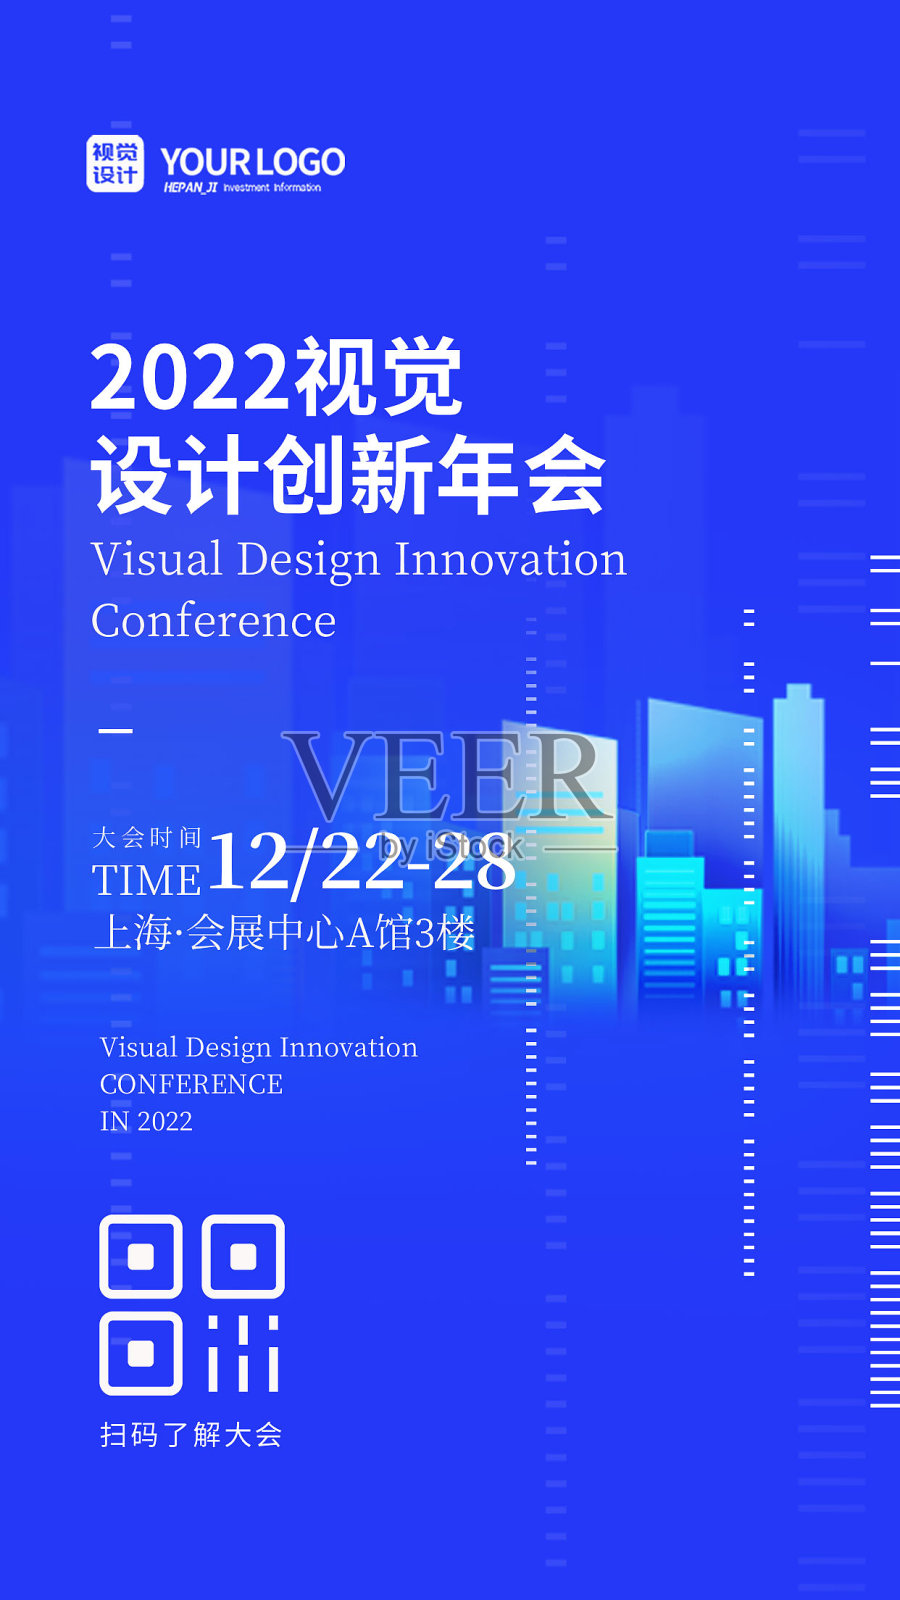 蓝色大气科技感年终商务活动年会手机海报设计模板素材